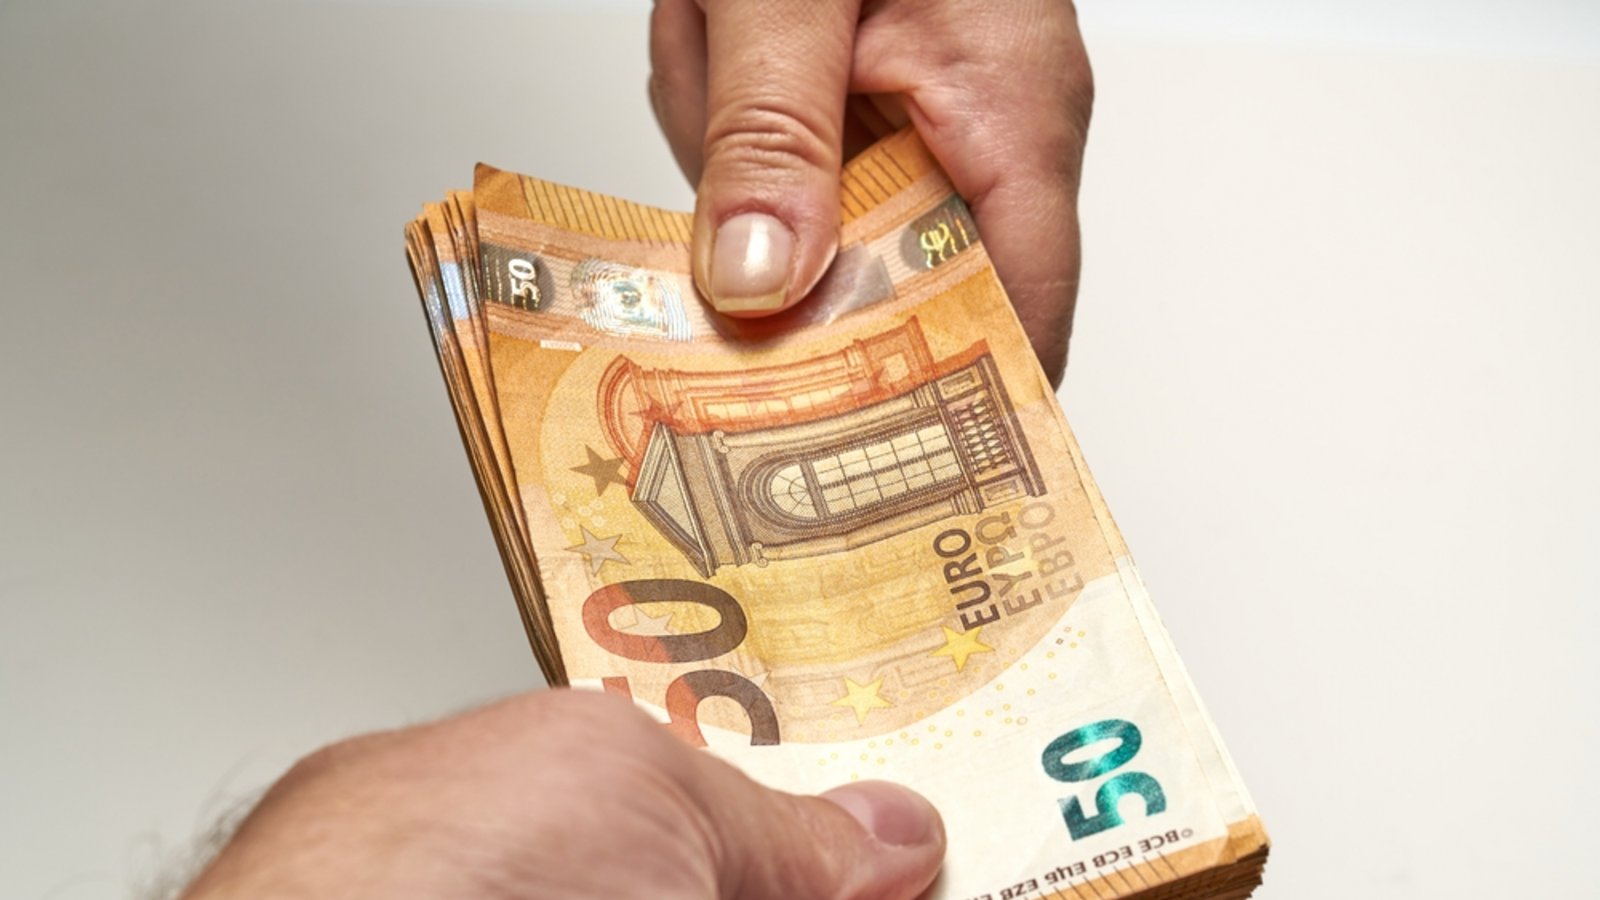 Kann man die 500 Euro behalten?Foto: nadia_if / shutterstock.com